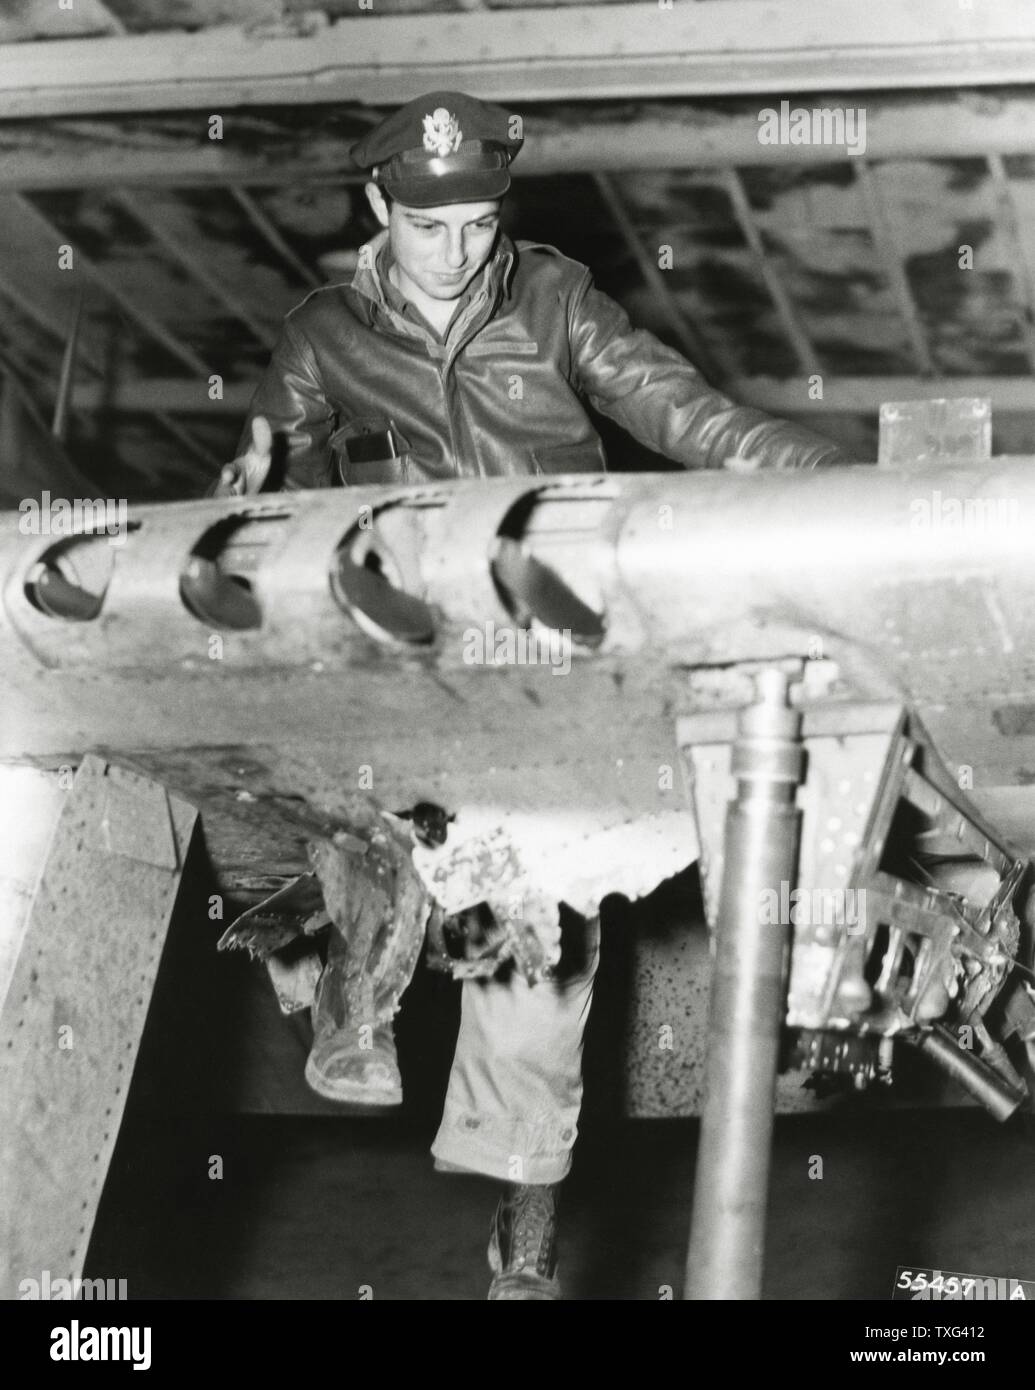 Notant le mécanicien de dommages causés par une batterie anti-aérienne allemande sur l'aile d'un Américain Republic P-47D Thunderbolt "lourd" d'avions de chasse. 1944 Banque D'Images